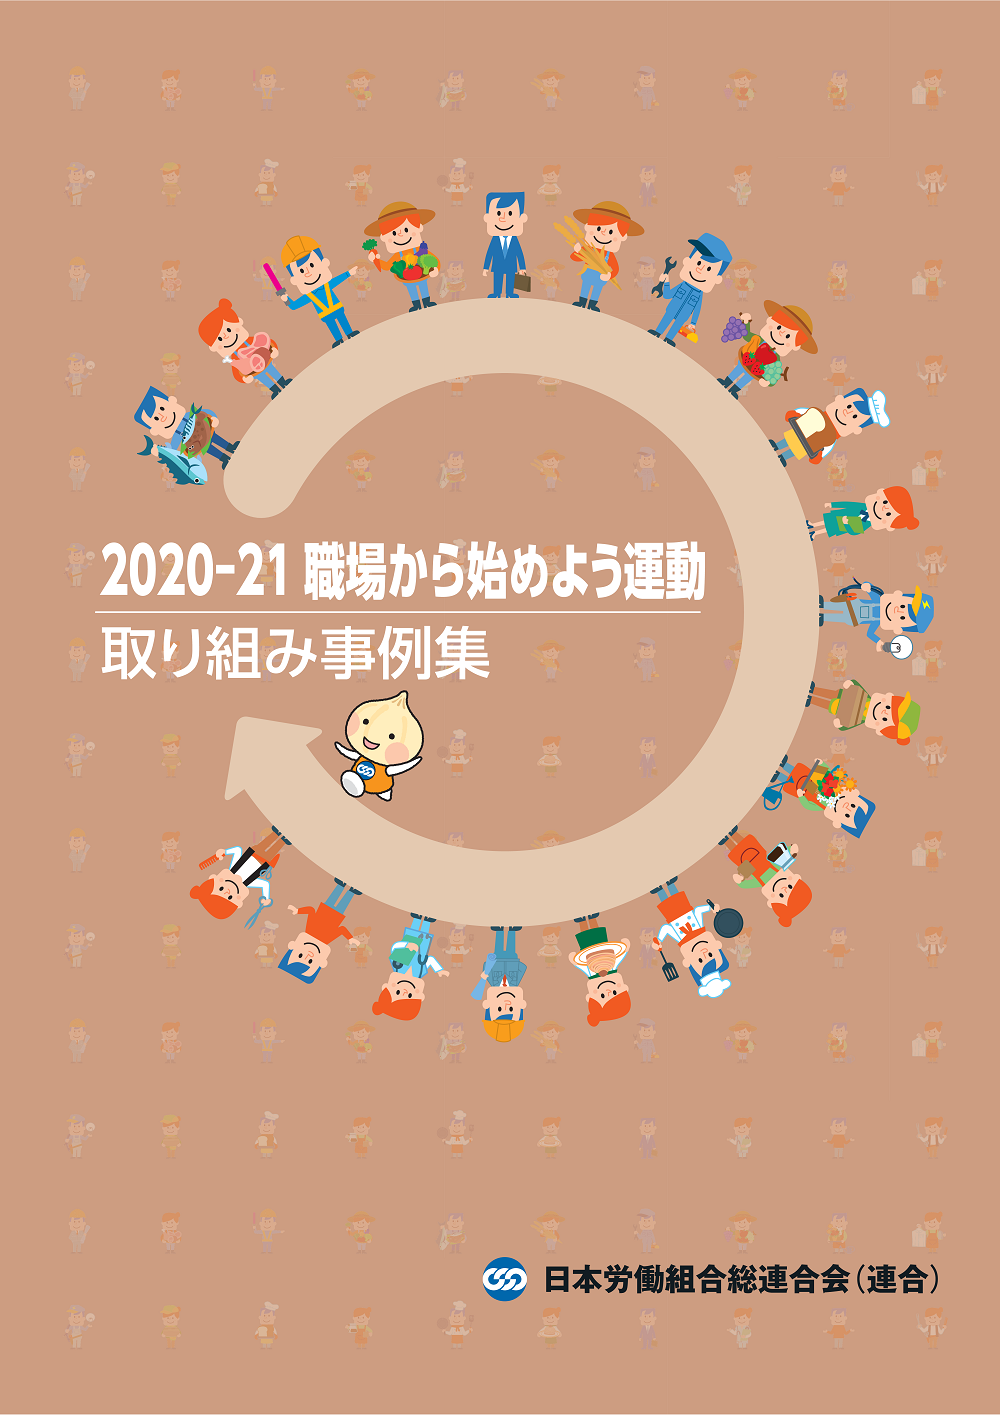 2020-2021職場から始めよう運動取り組み事例集,連合,労働組合